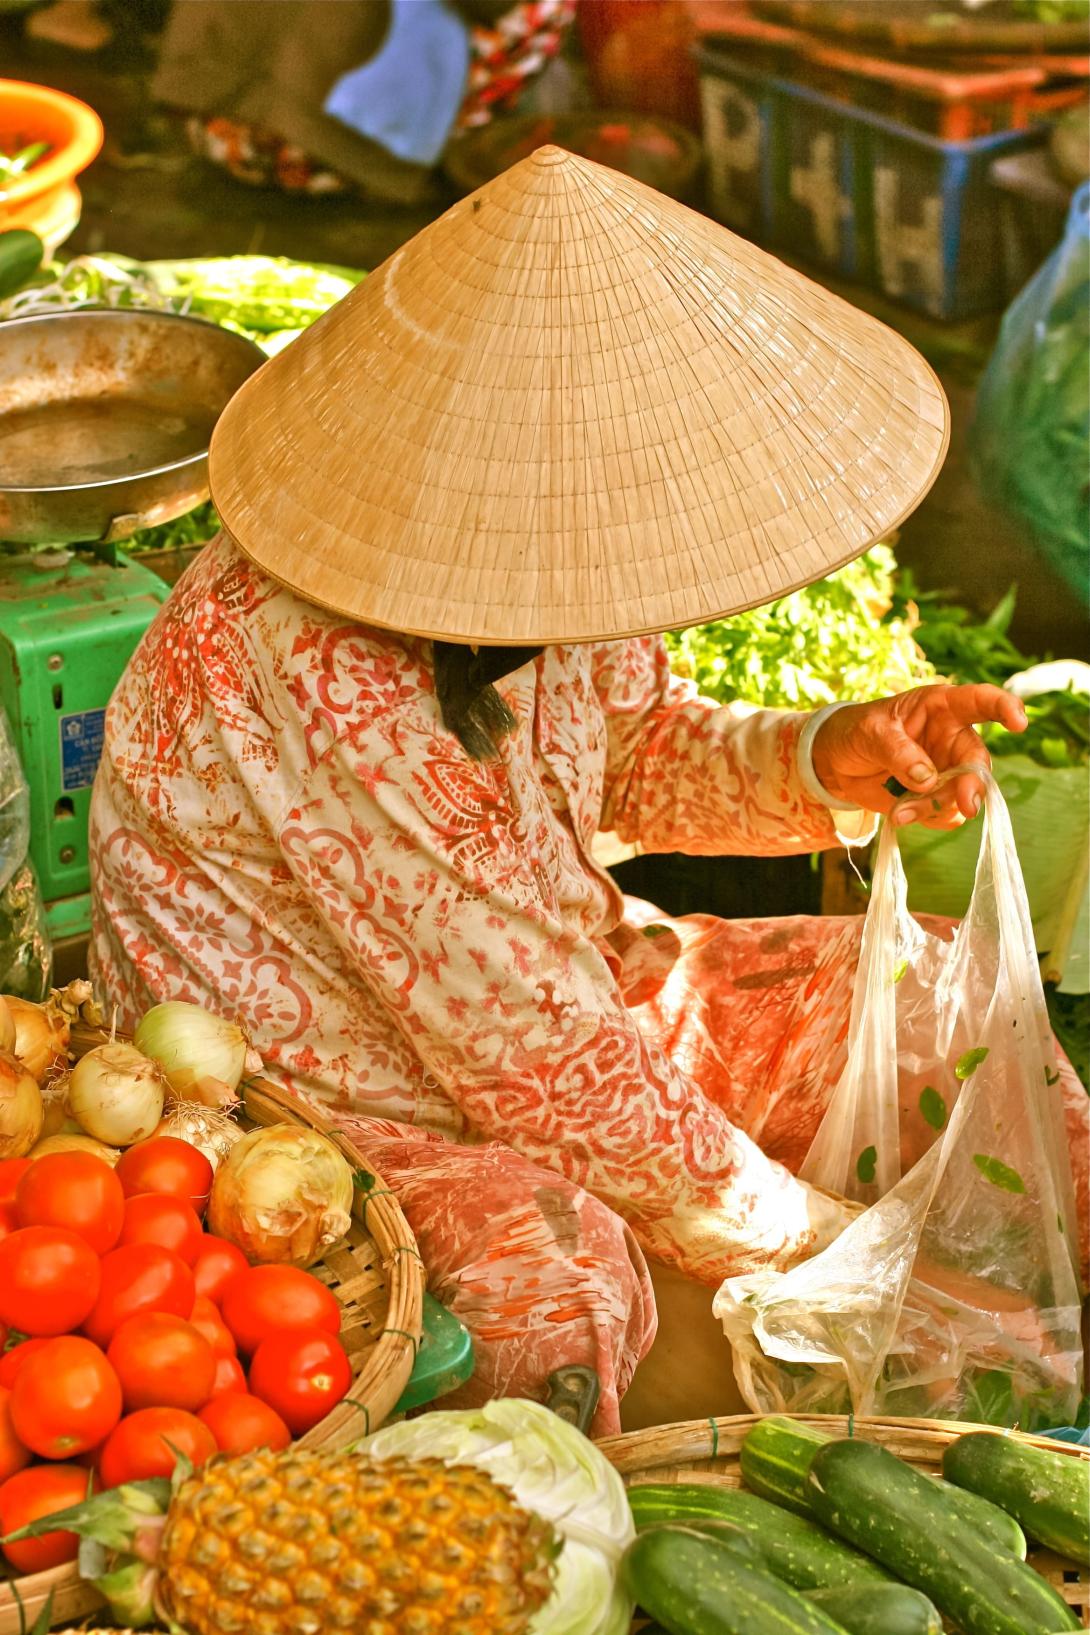 Hanoi street market vendor selling fruit and vegetables